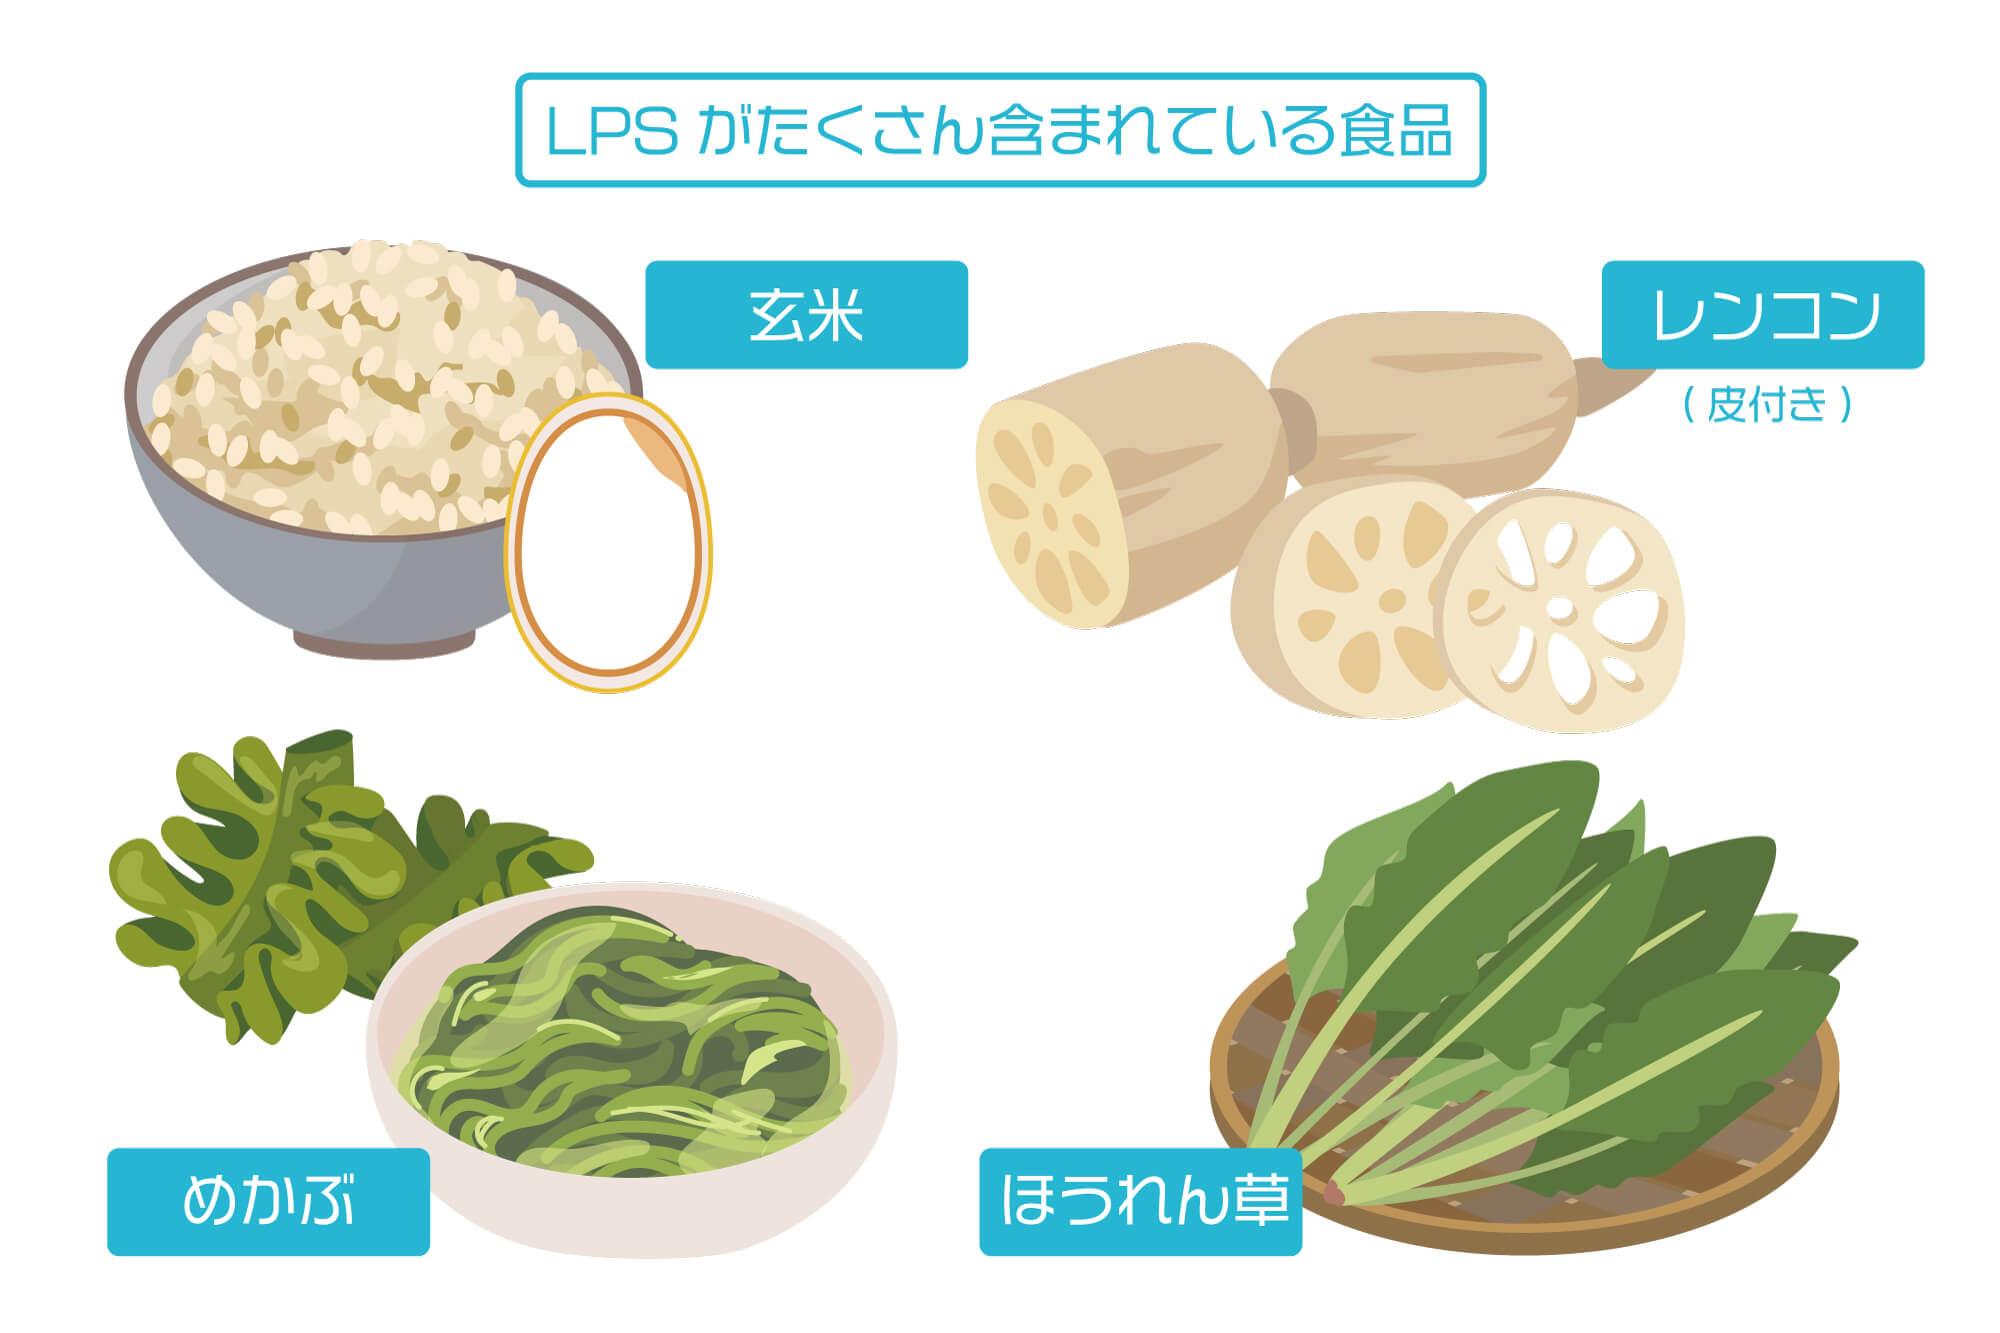 LPSが多く含まれている食品